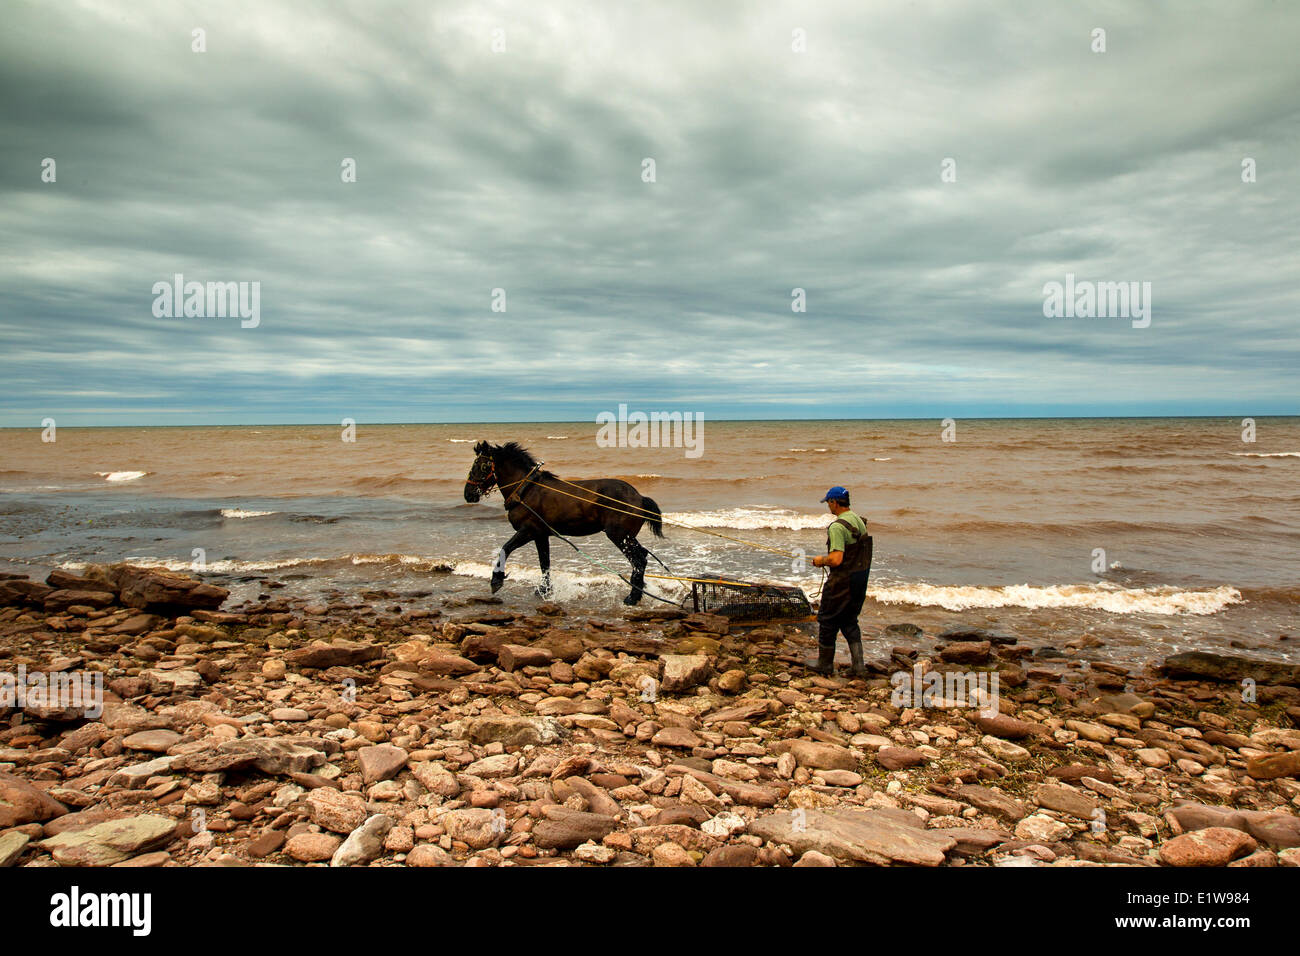 Irisch Moos Fischer und Pferd, Nordkap, Prince Edward Island, Canada Stockfoto